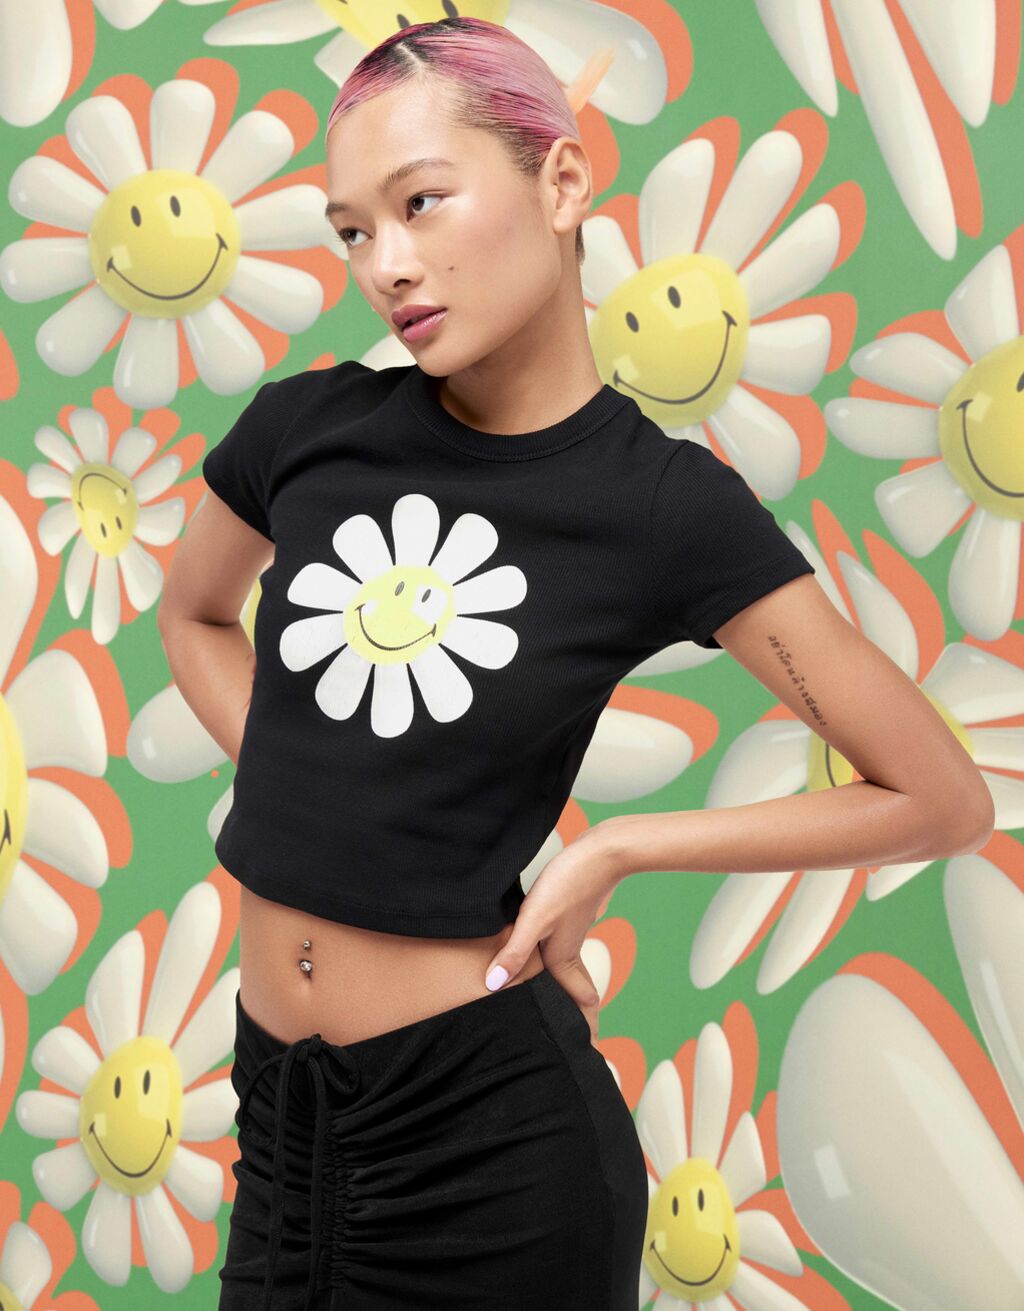 T-shirt de manga curta com estampado do Smiley® com margarida